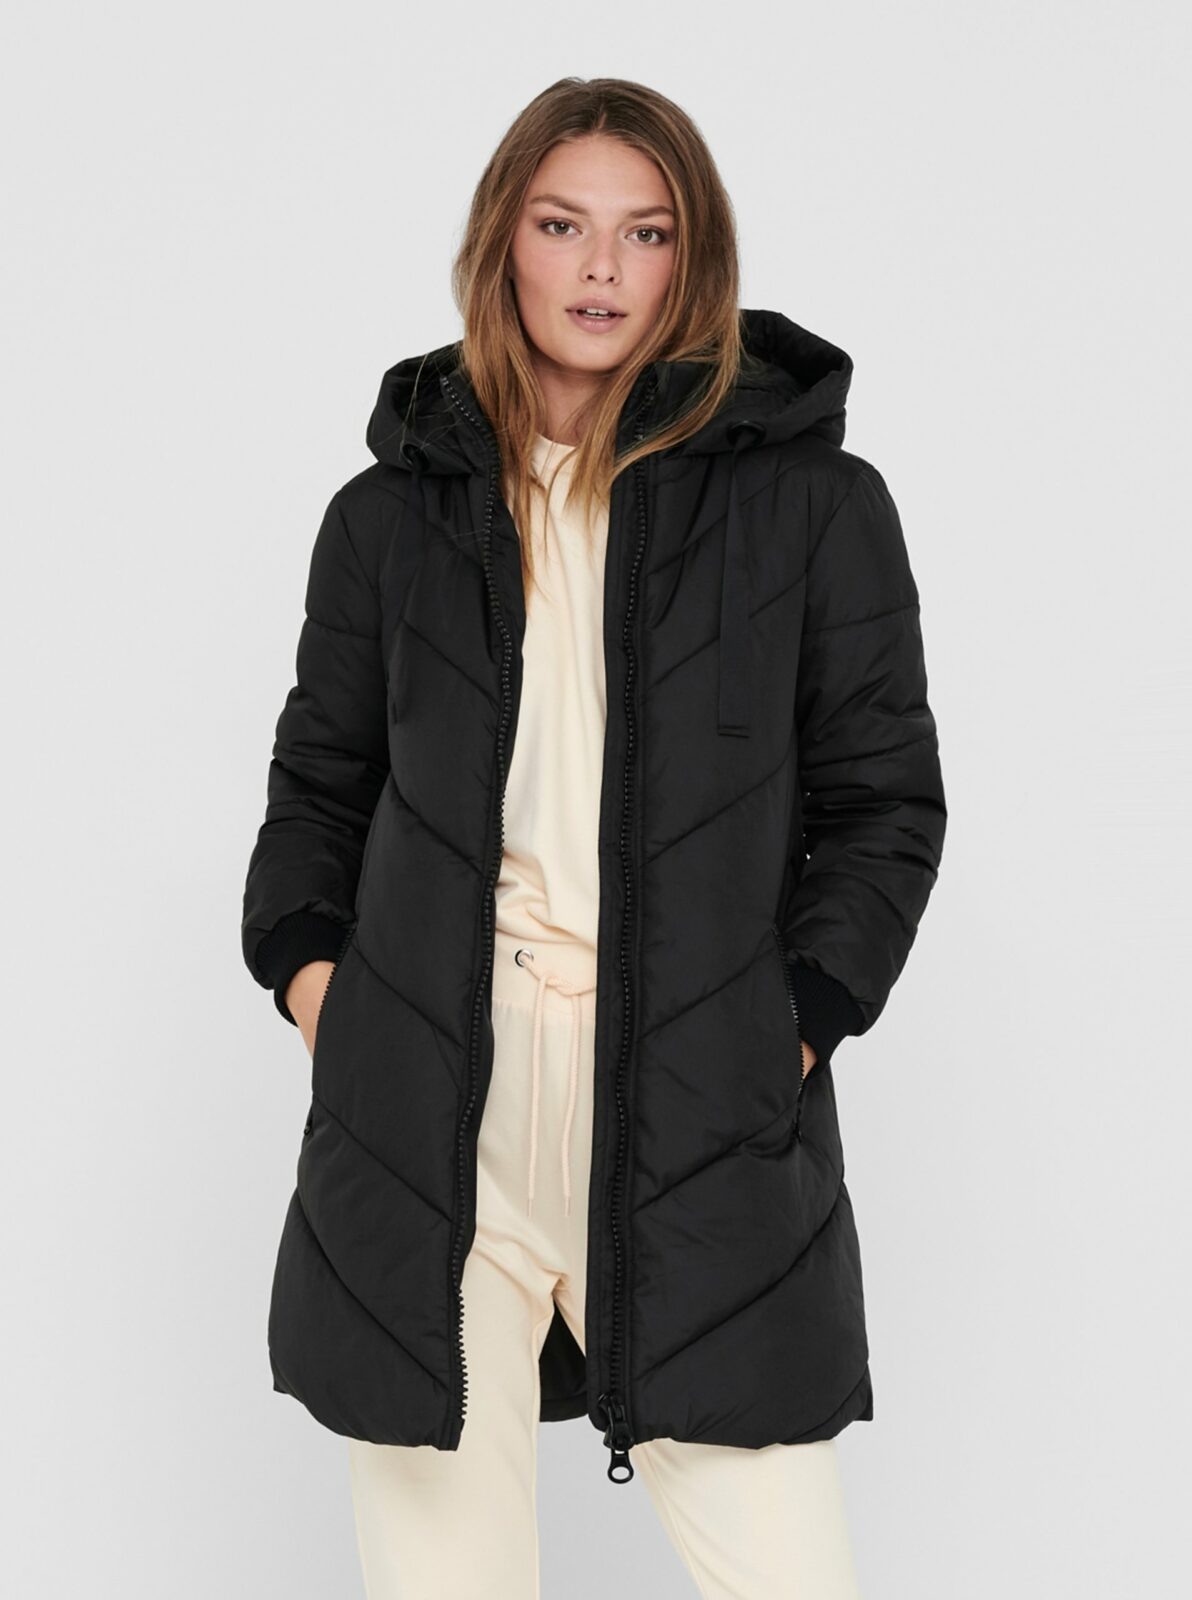 Černý zimní prošívaný kabát JDY